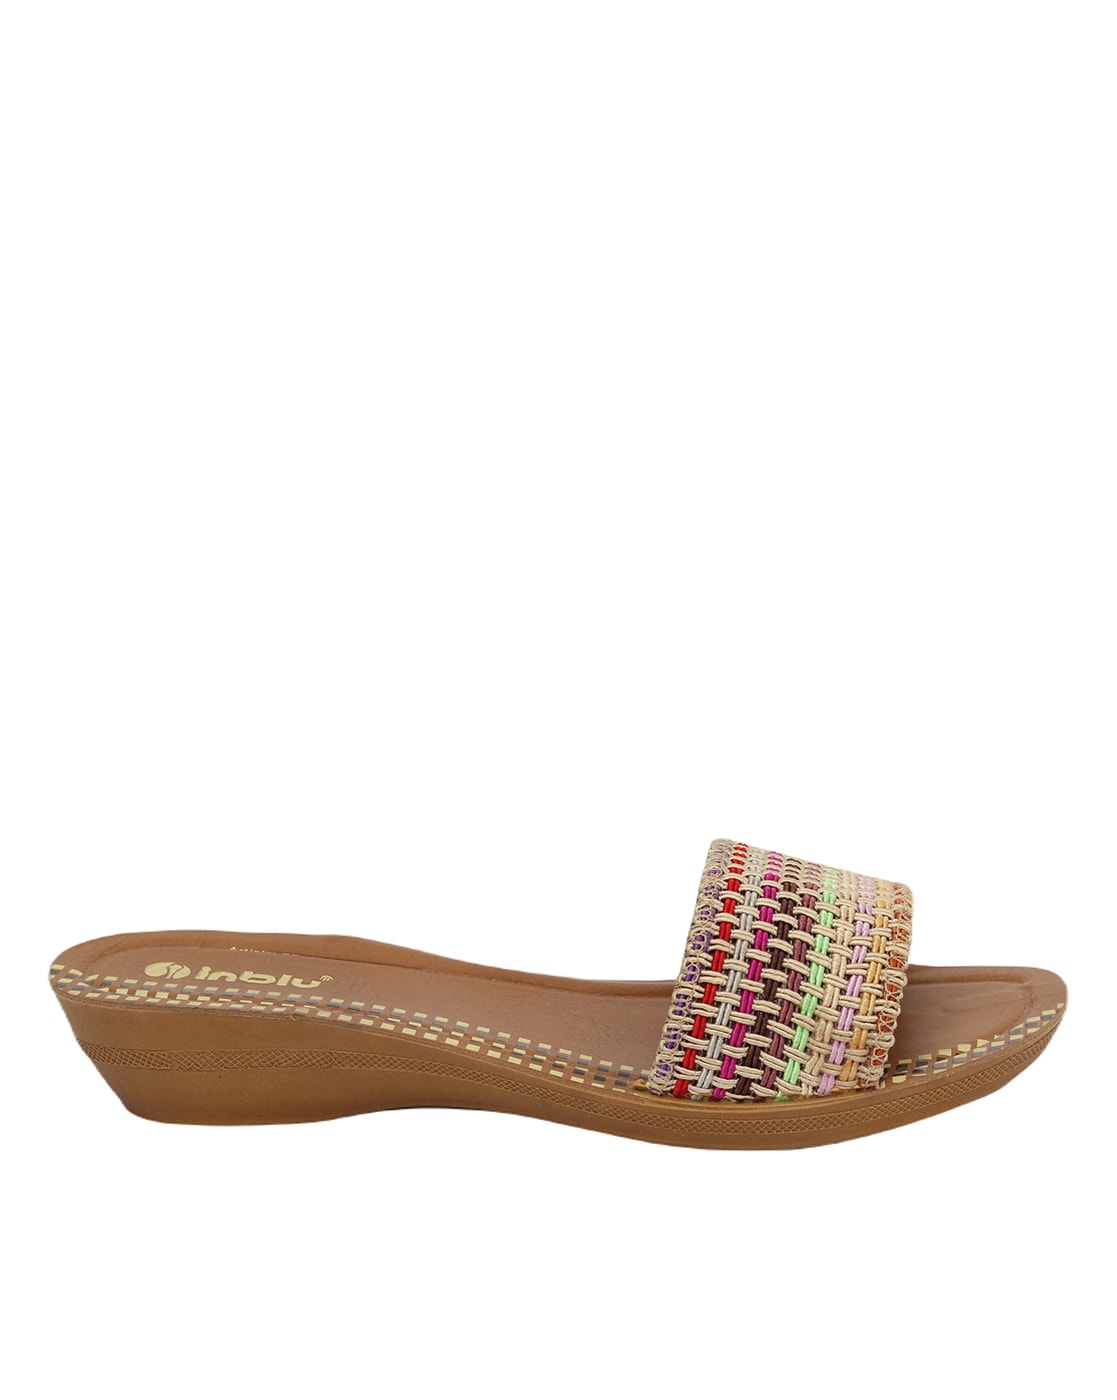 Ladies High Heels Inblu Ladies Heel Slippers, Size: 5 To 11 at Rs 350/pair  in Madurai